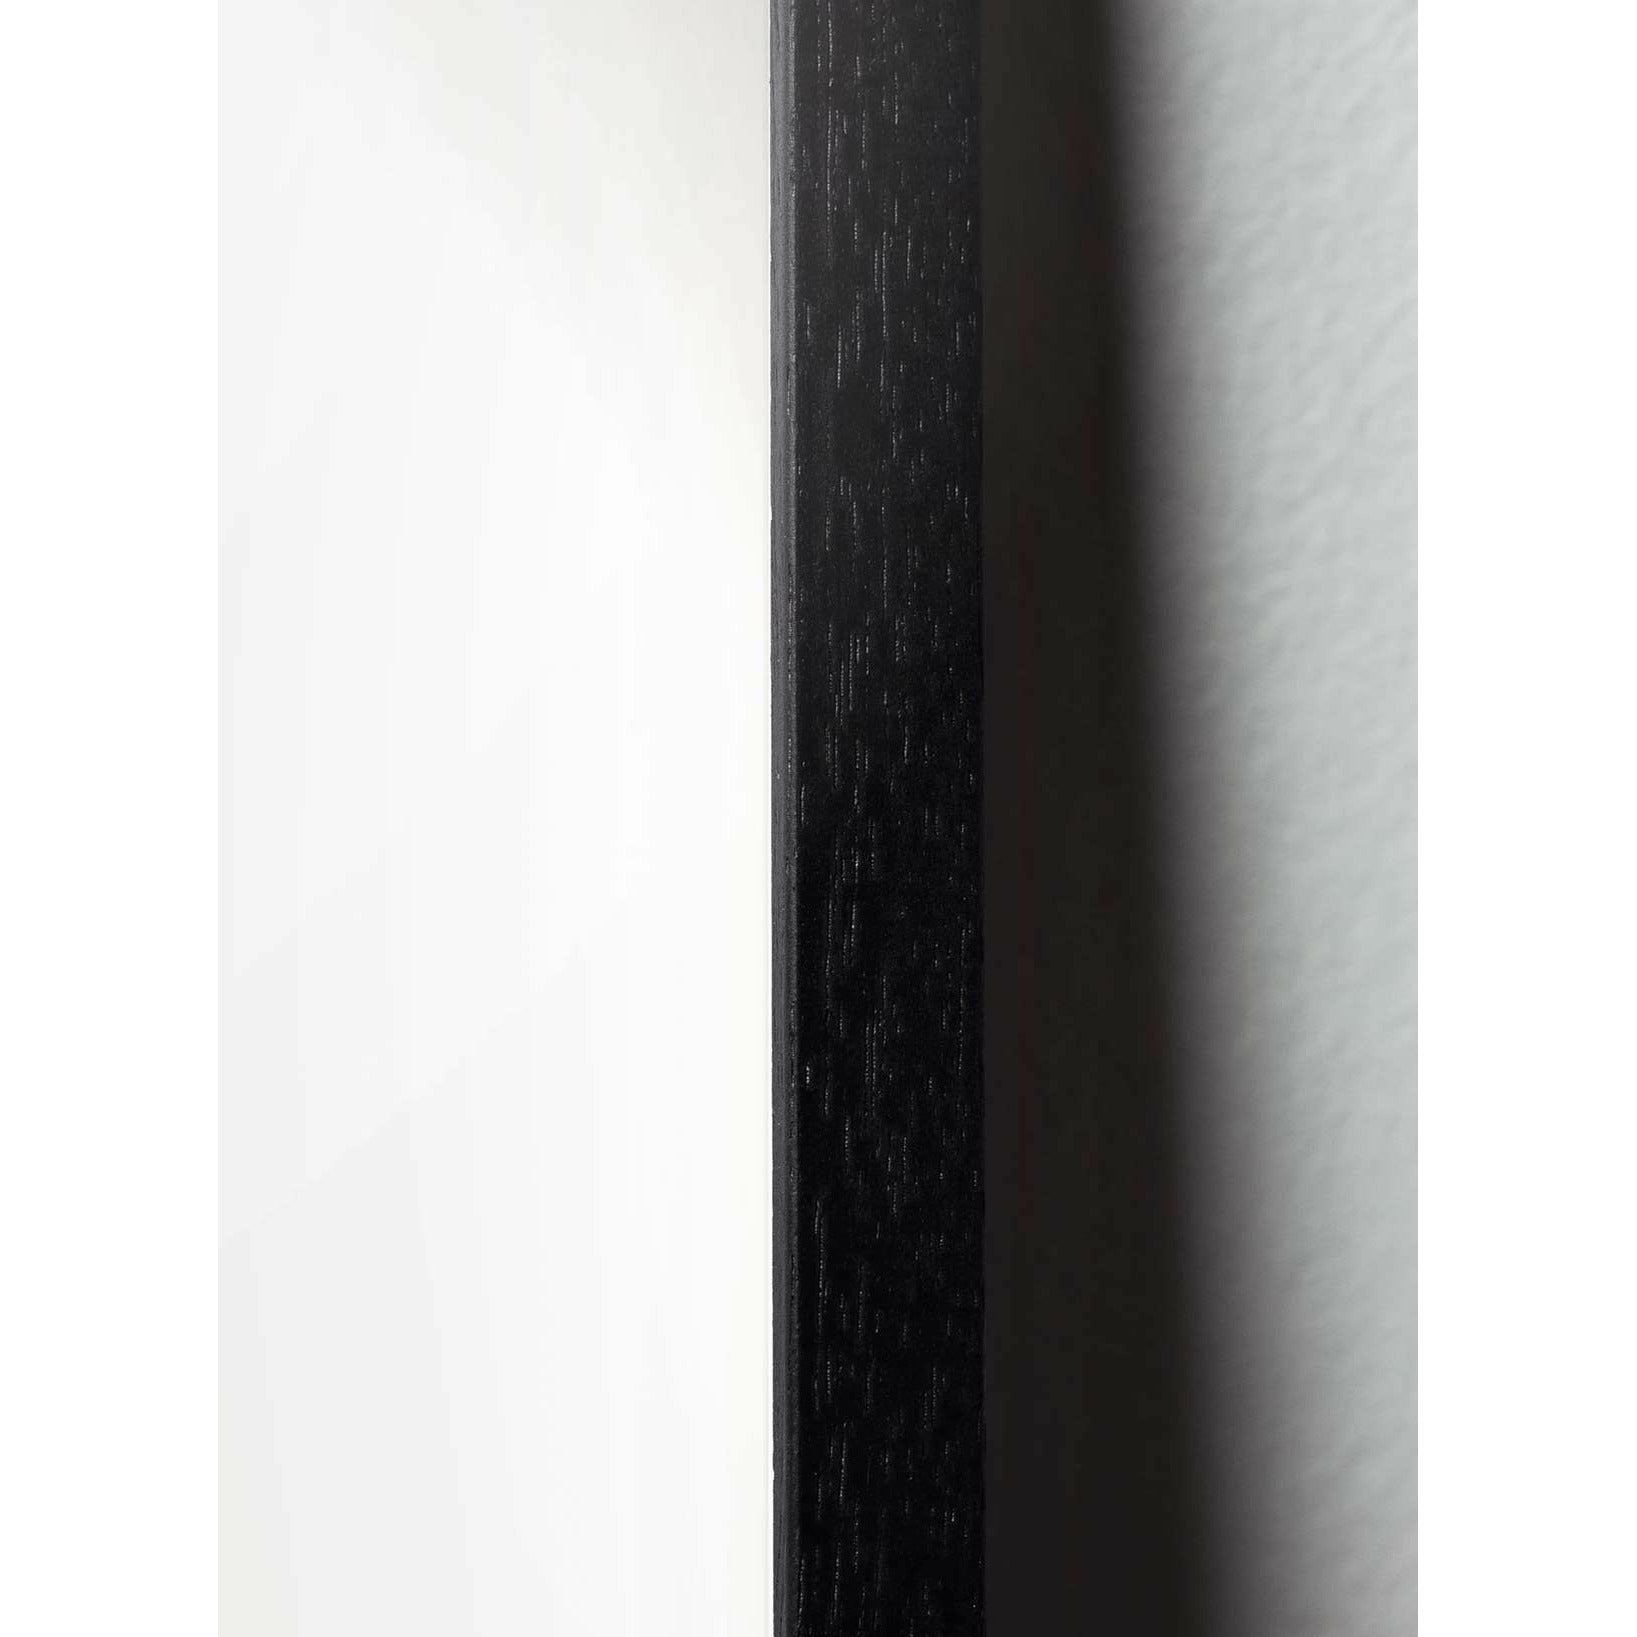 brainchild Eierfiguren Poster, Rahmen aus schwarz lackiertem Holz A5, braun